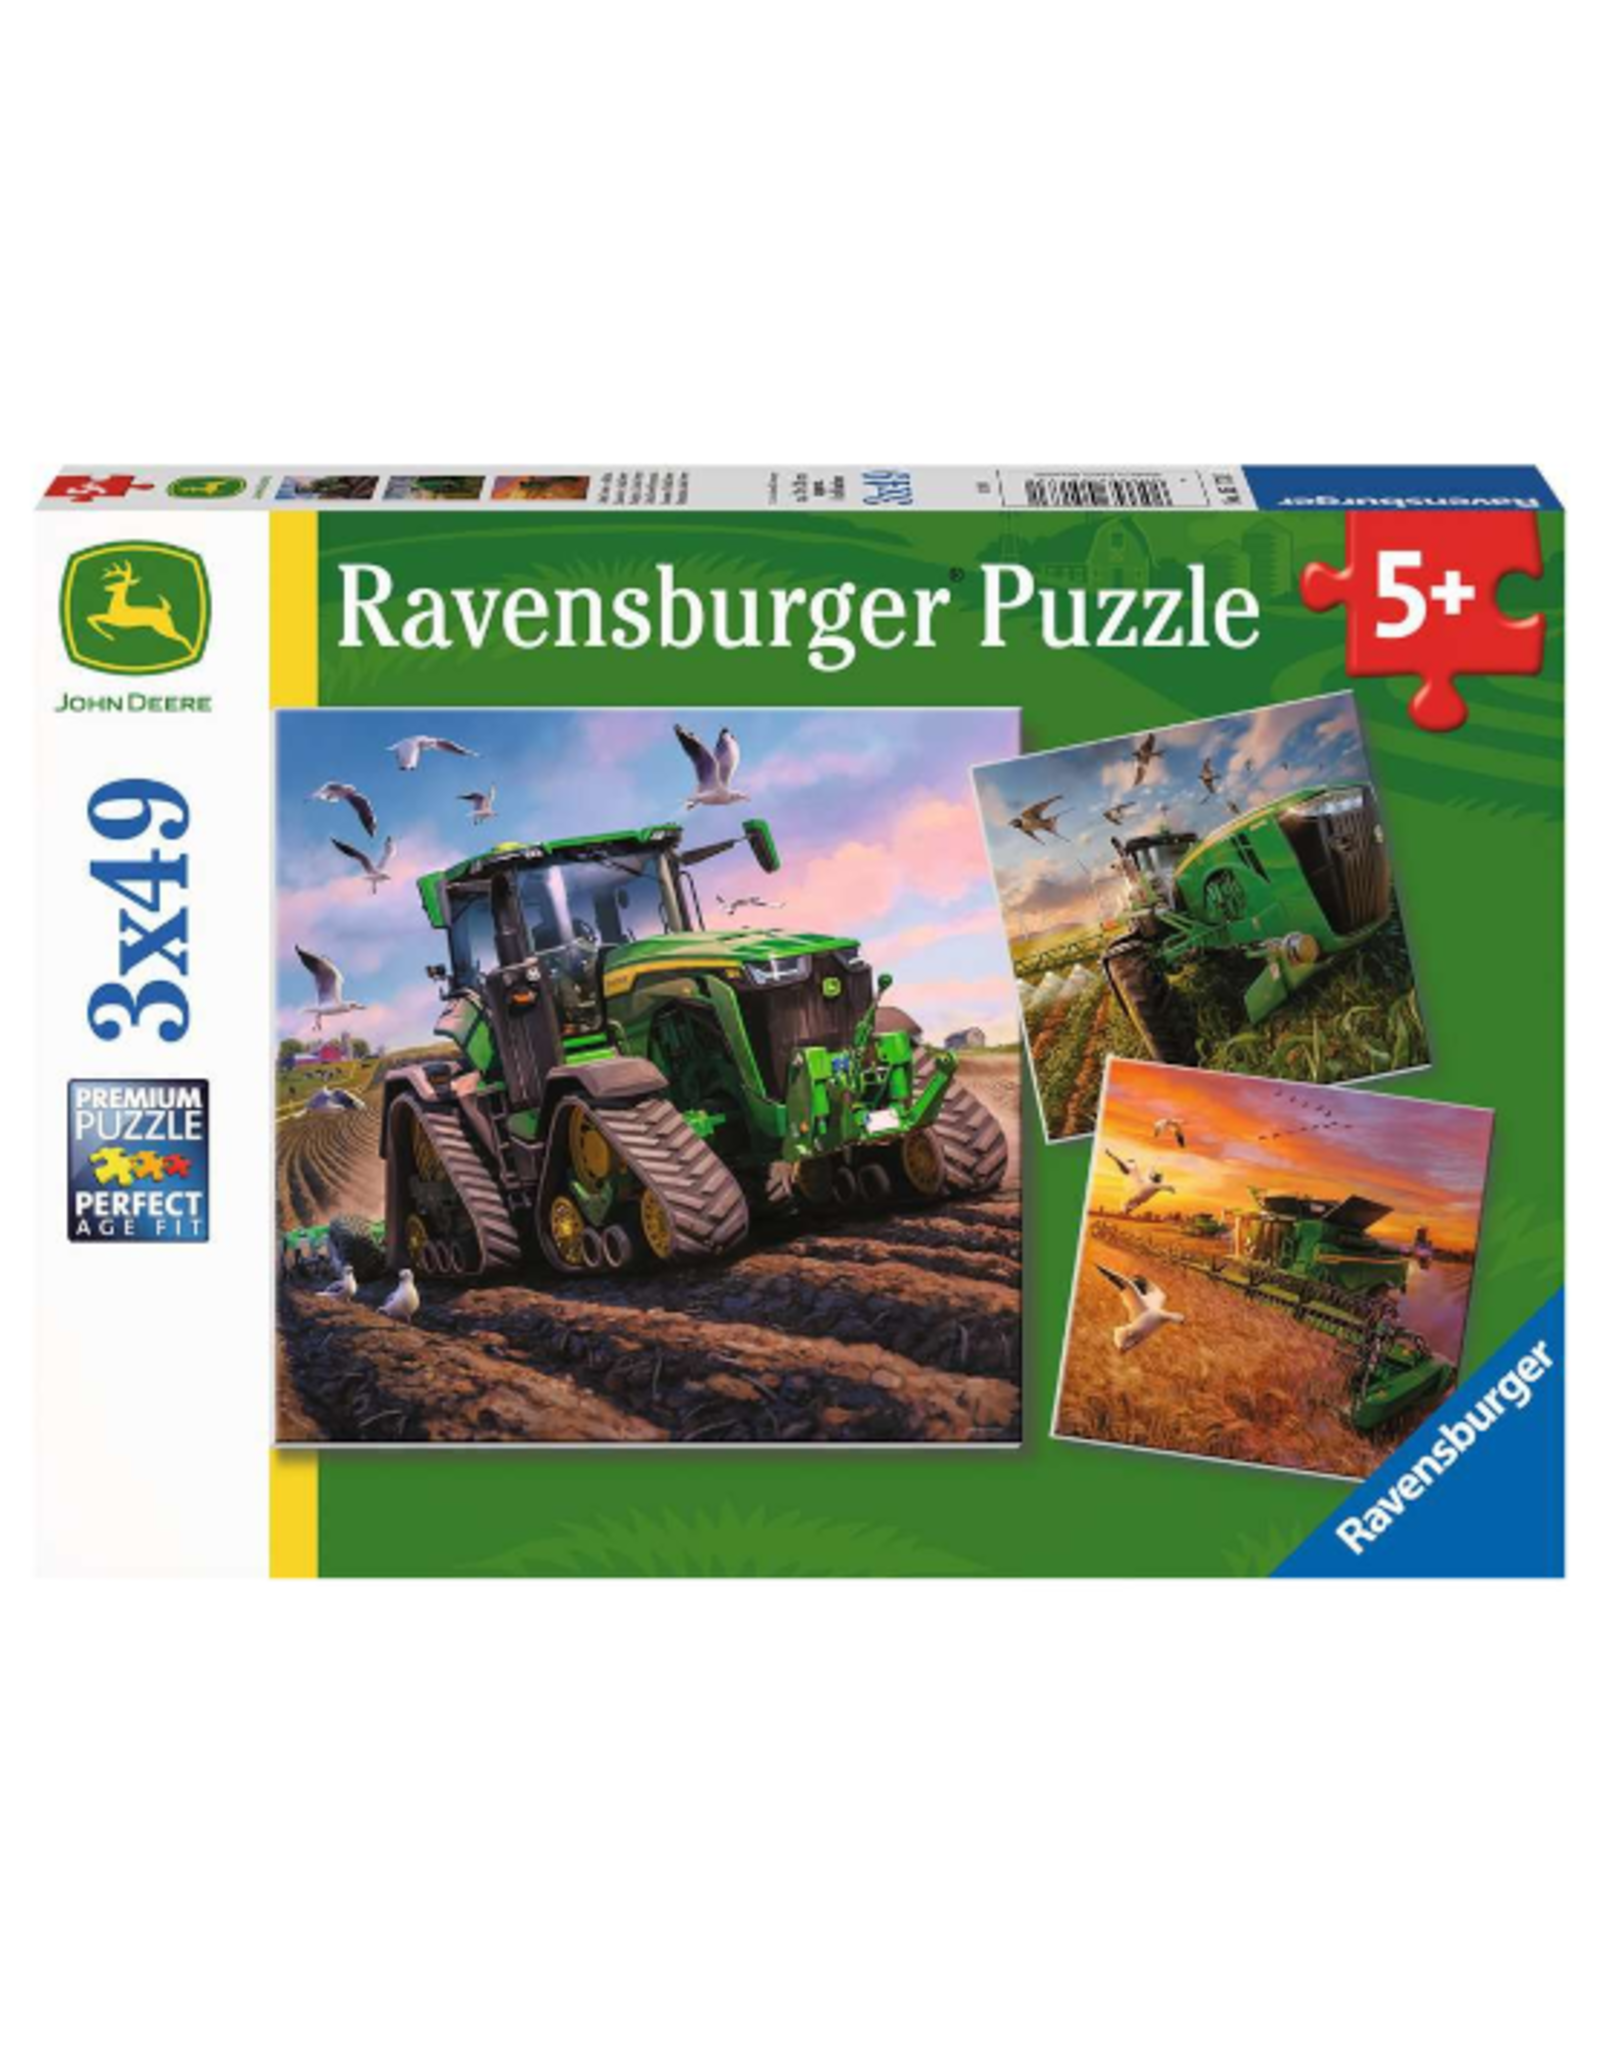 Ravensburger Ravensburger - 5+ - 3 x 49pcs - Seasons of John Deere